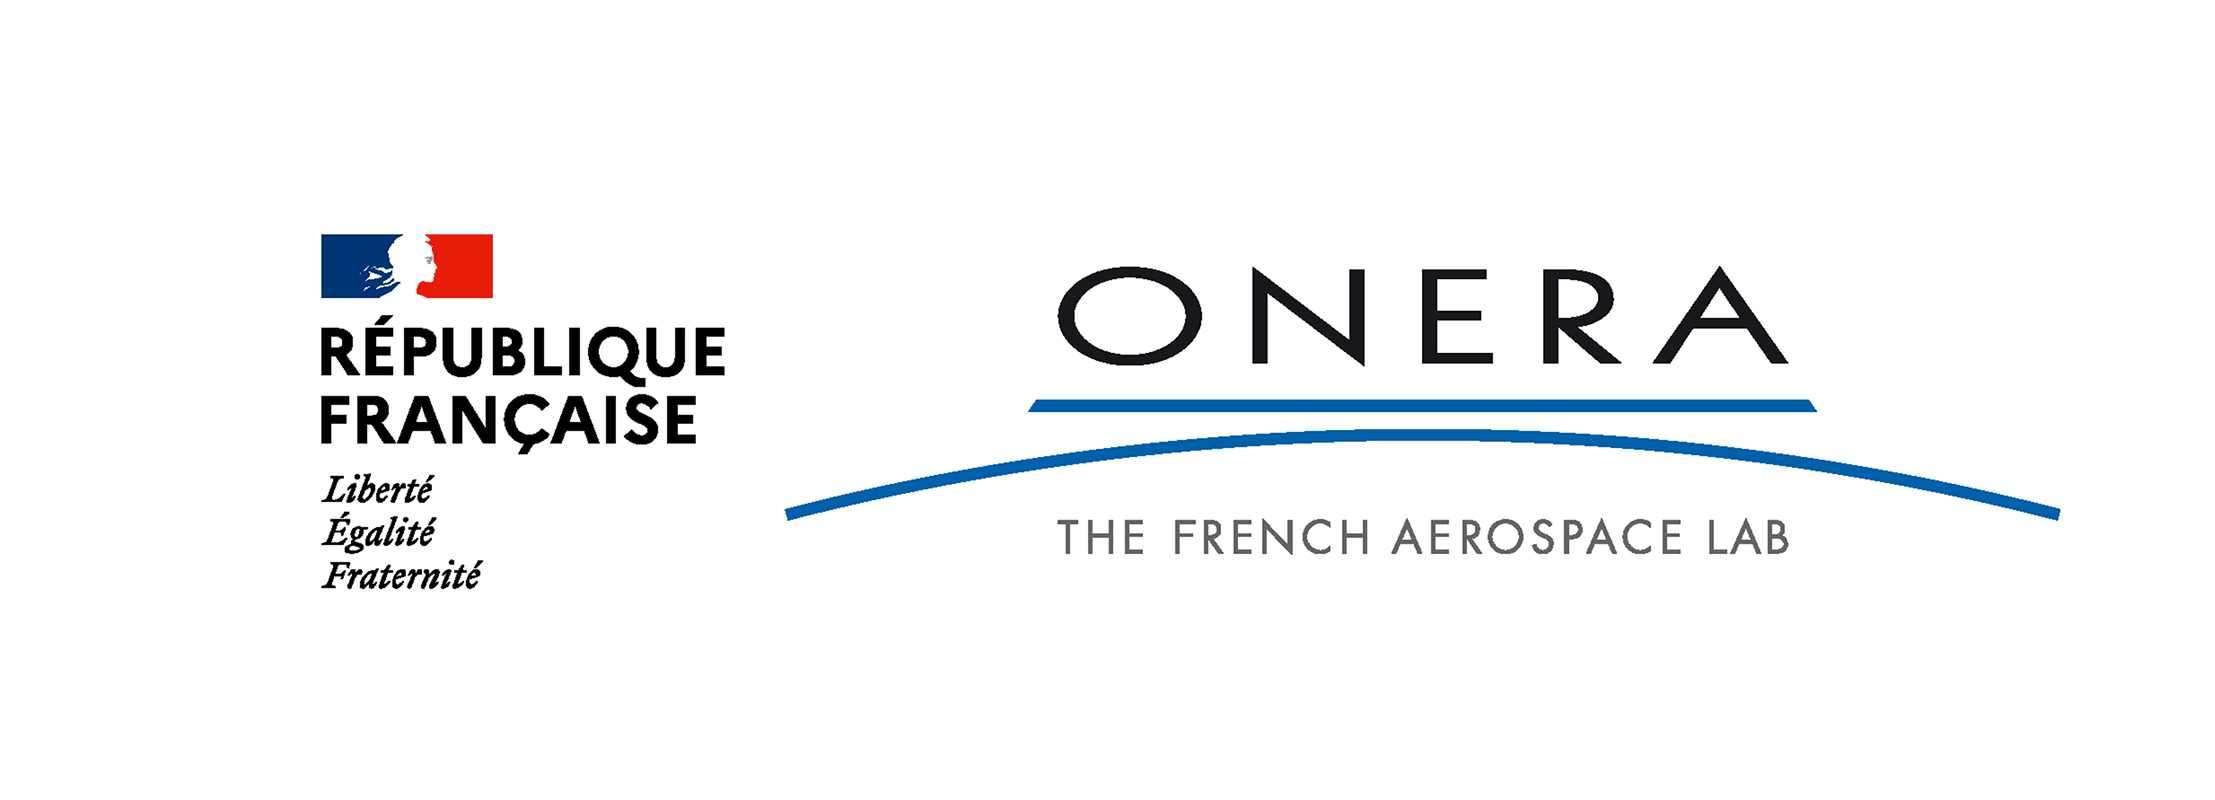 Logo Republic française et ONERA